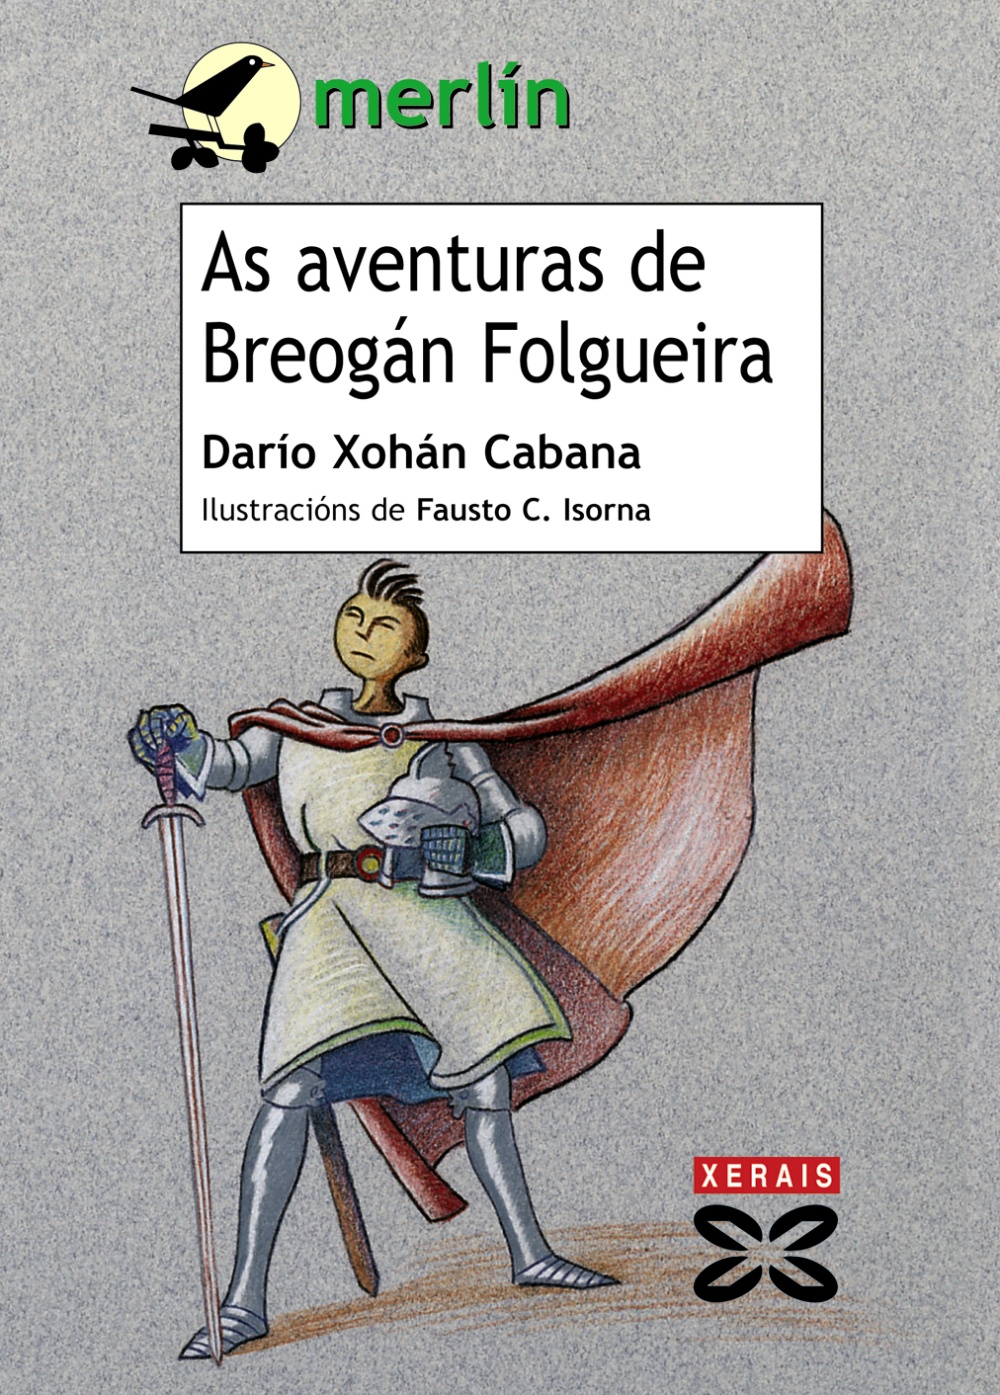 As aventuras de Breogán Folgueira